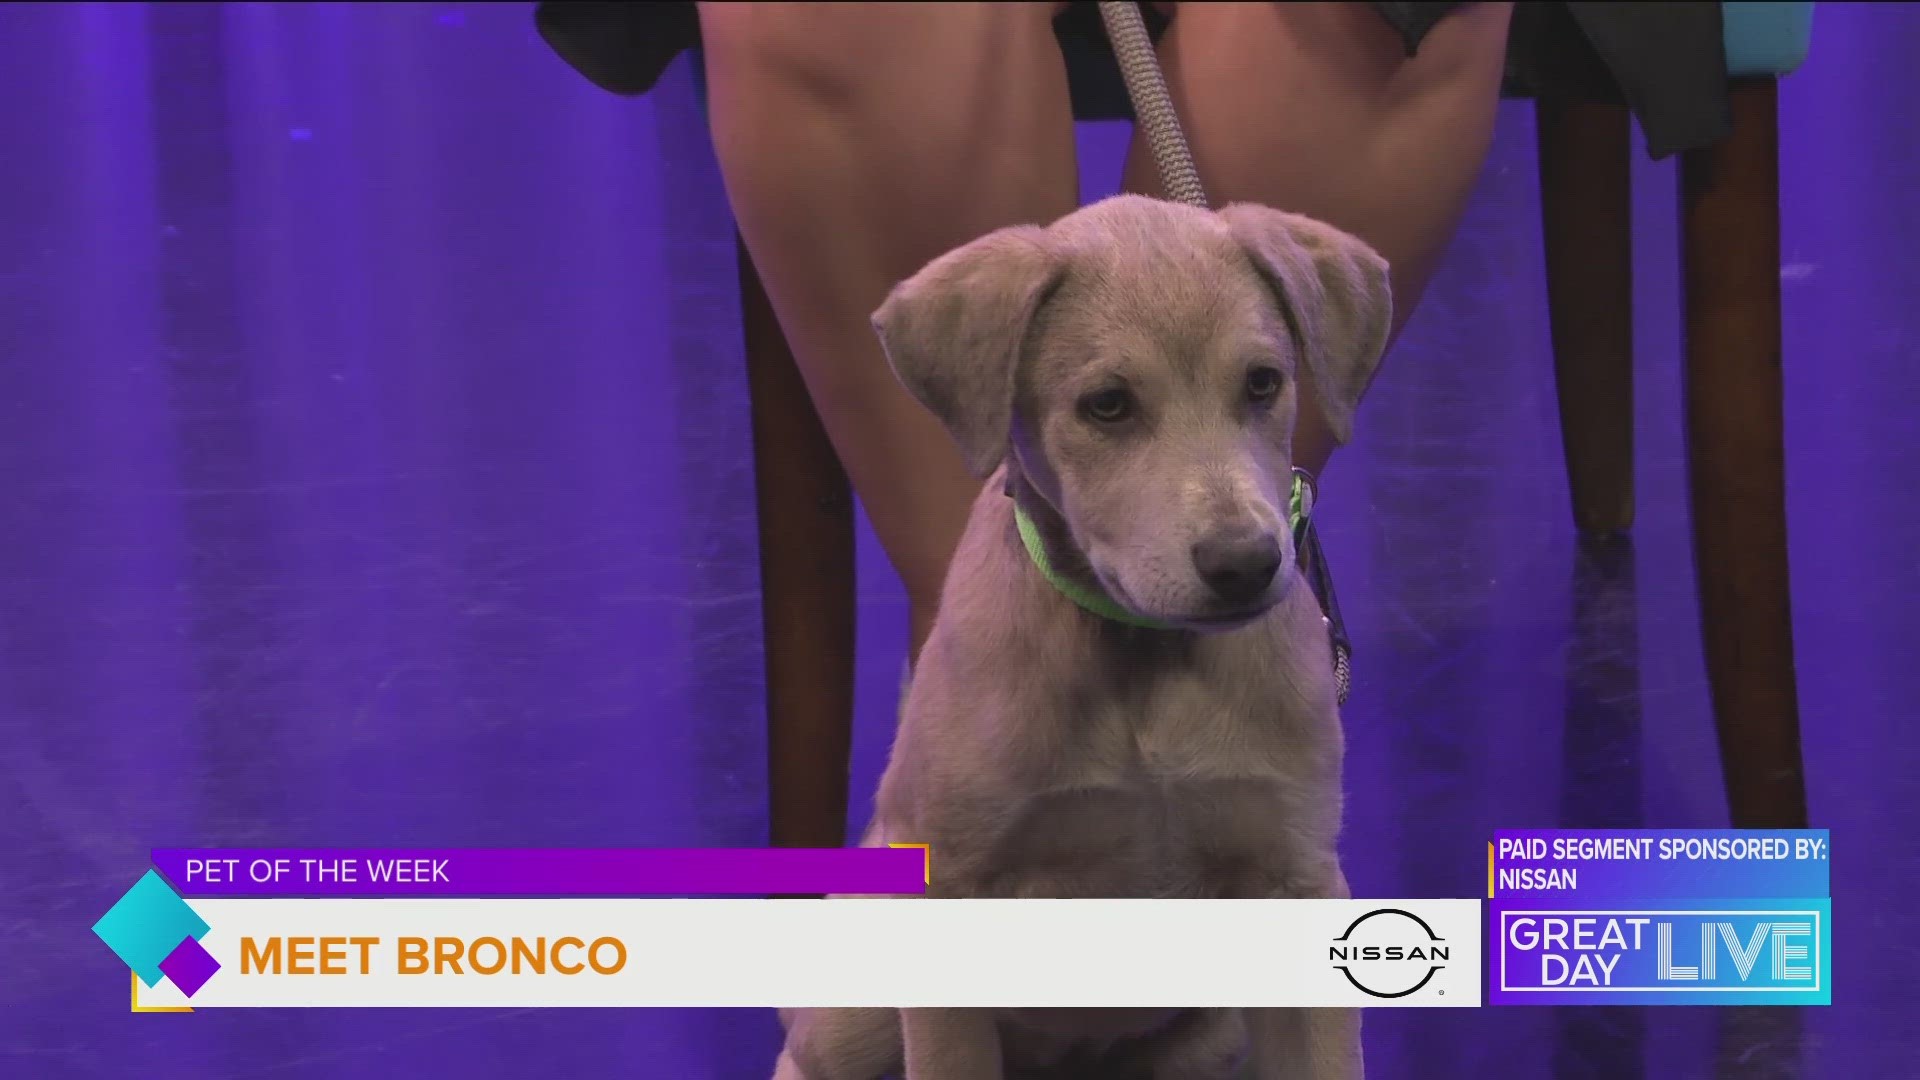 Pet of the week: Meet Bronco